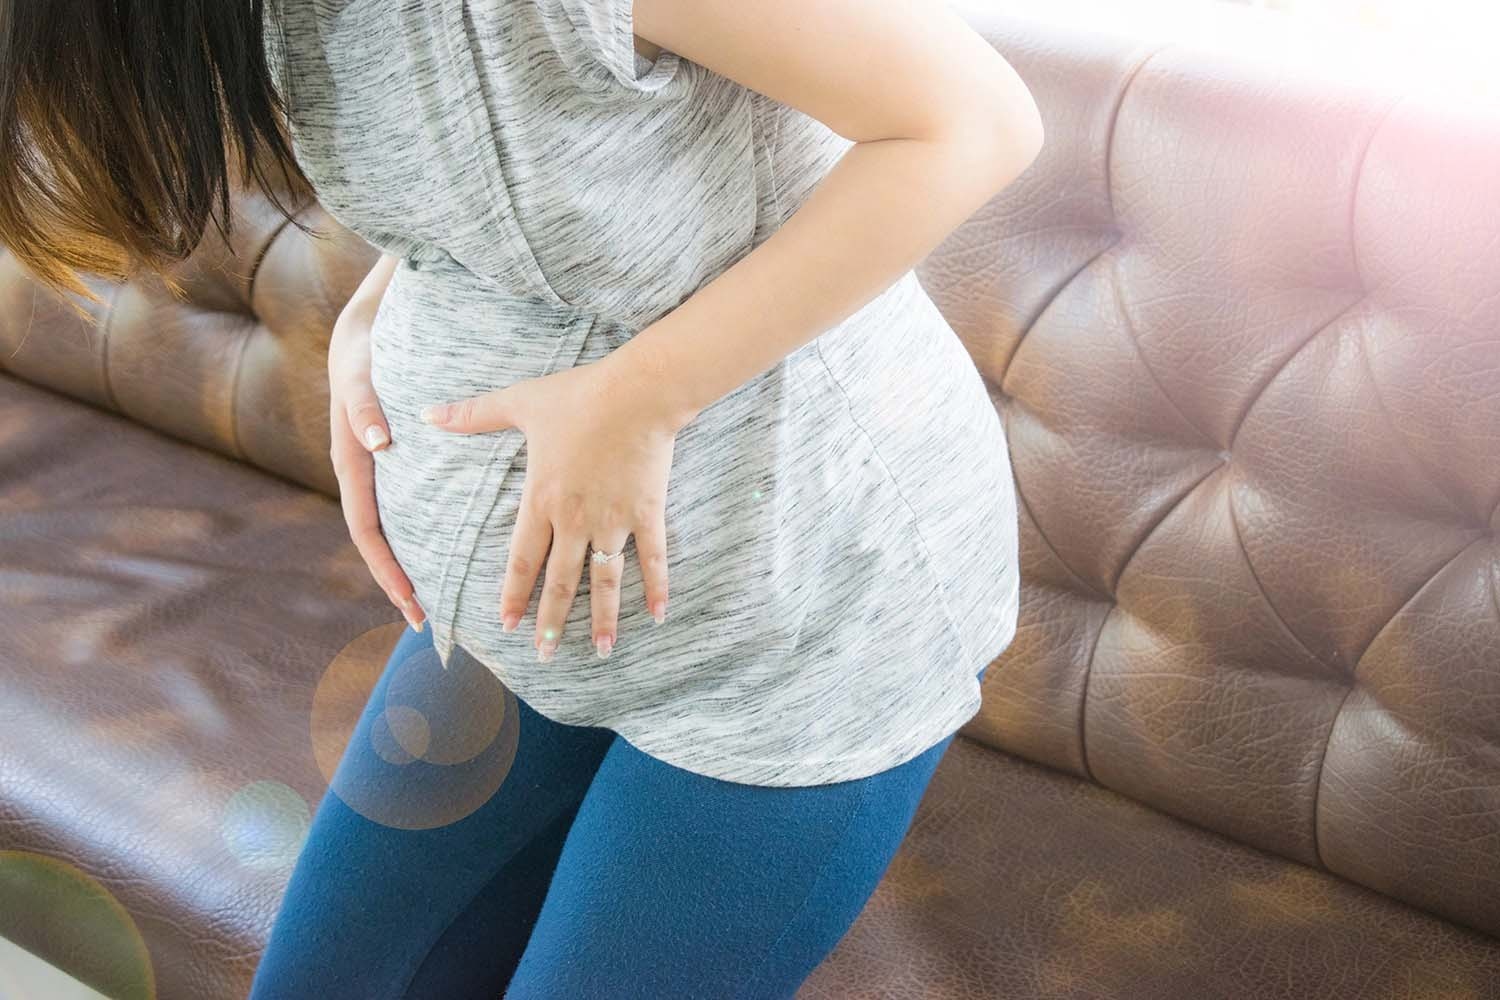 สัญญาณอันตรายที่แม่ตั้งครรภ์ต้องรีบไปพบแพทย์